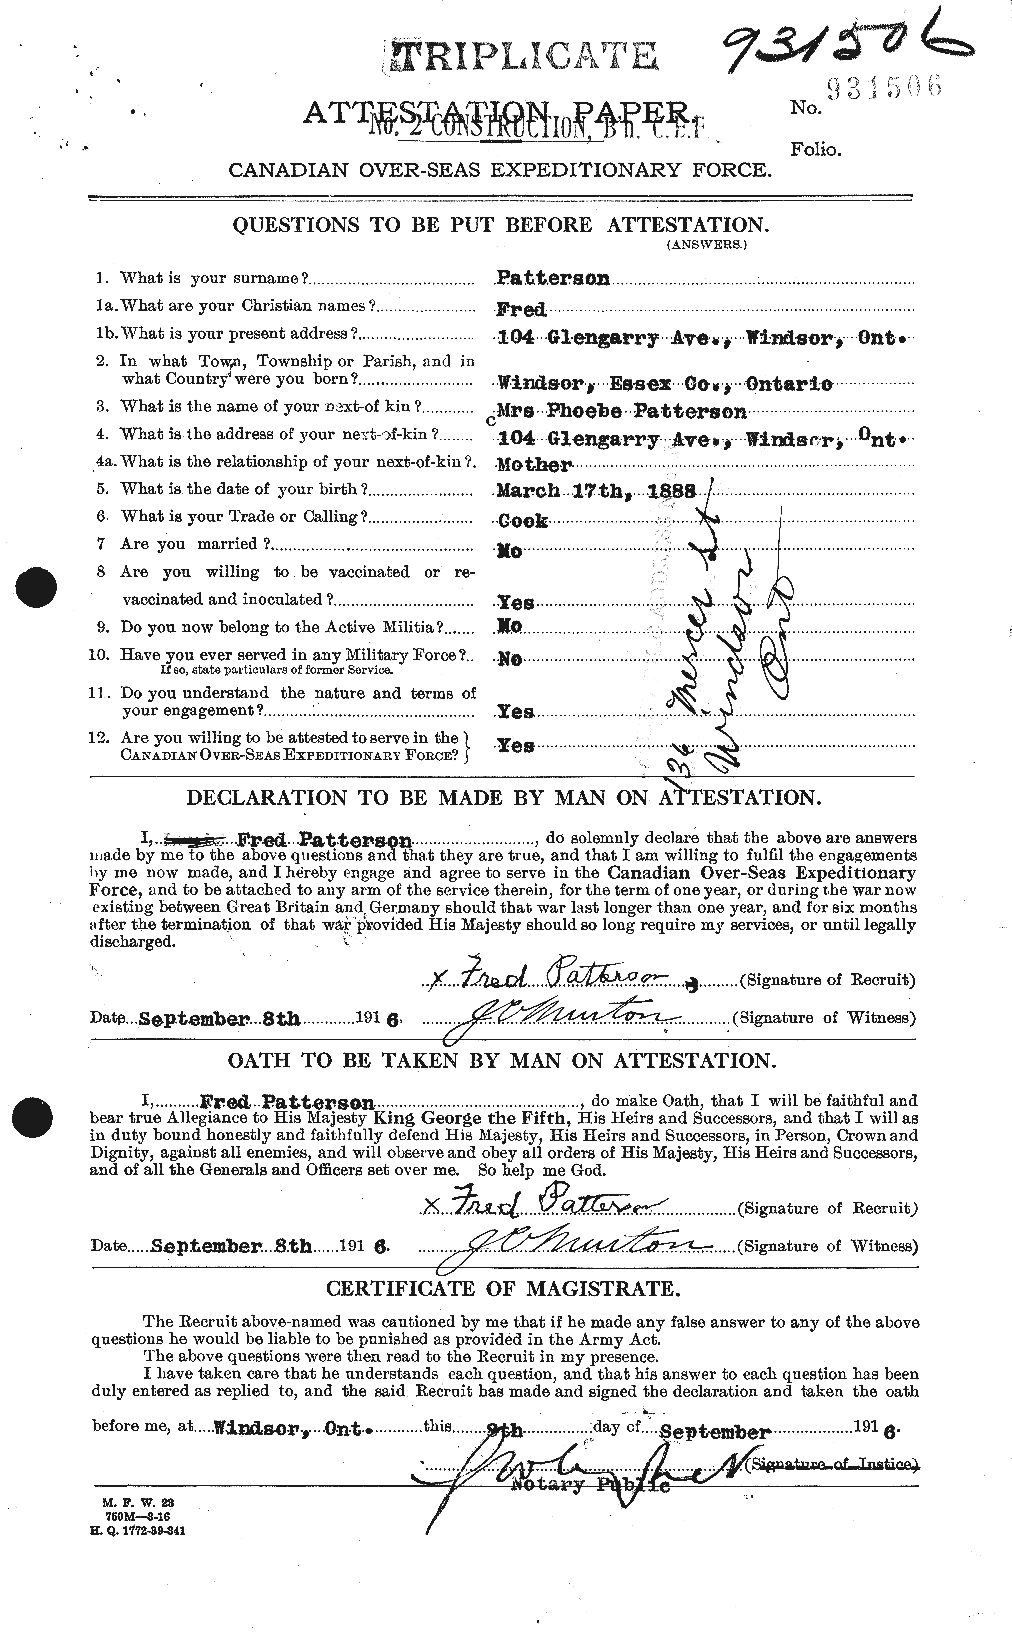 Dossiers du Personnel de la Première Guerre mondiale - CEC 568385a